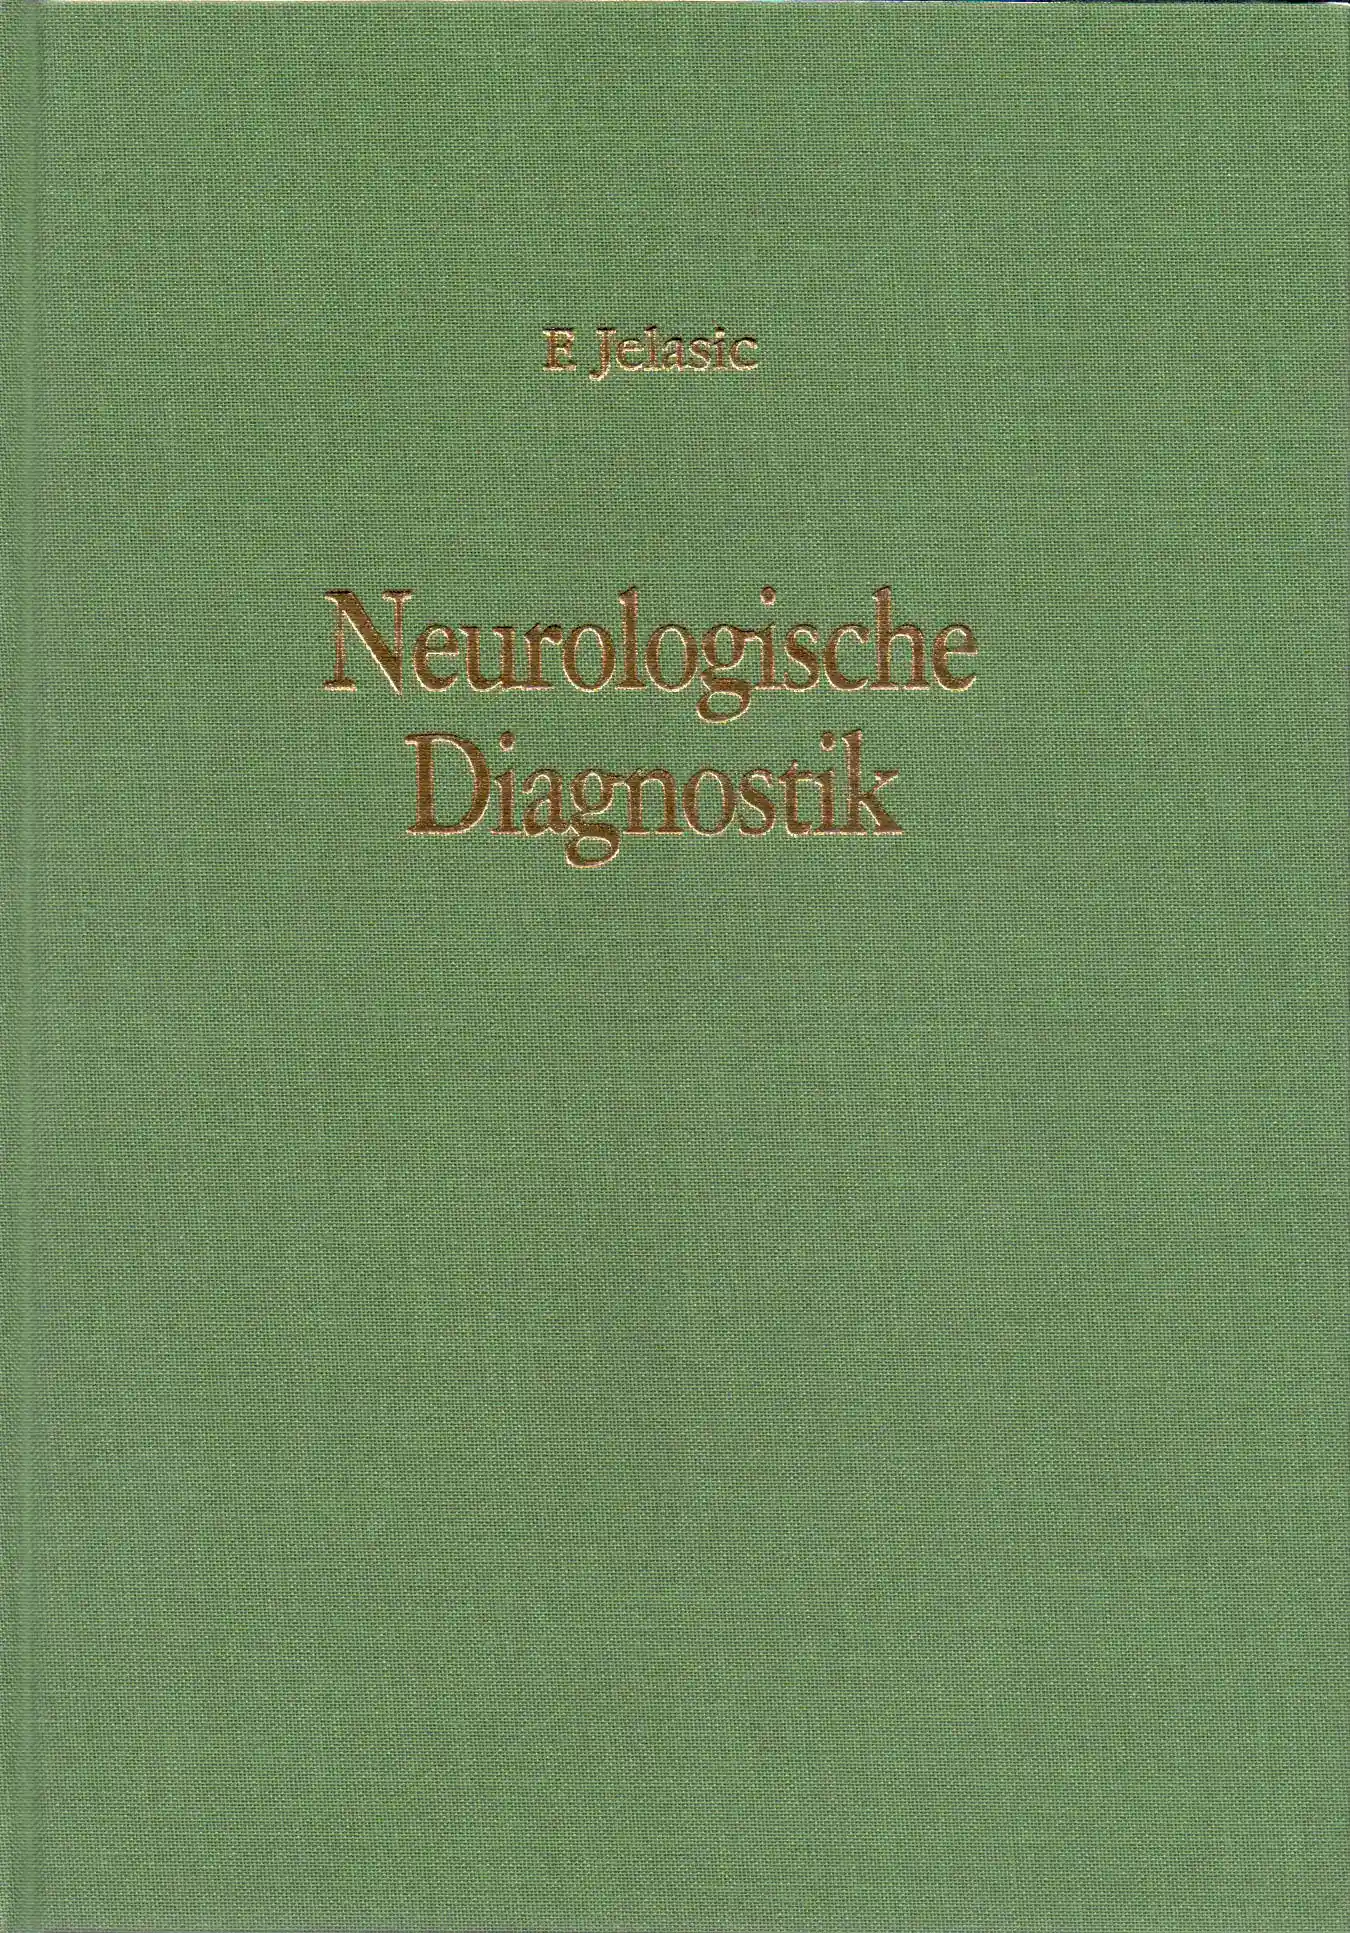 Neurologische Diagnostik (Forschungsarbeit)